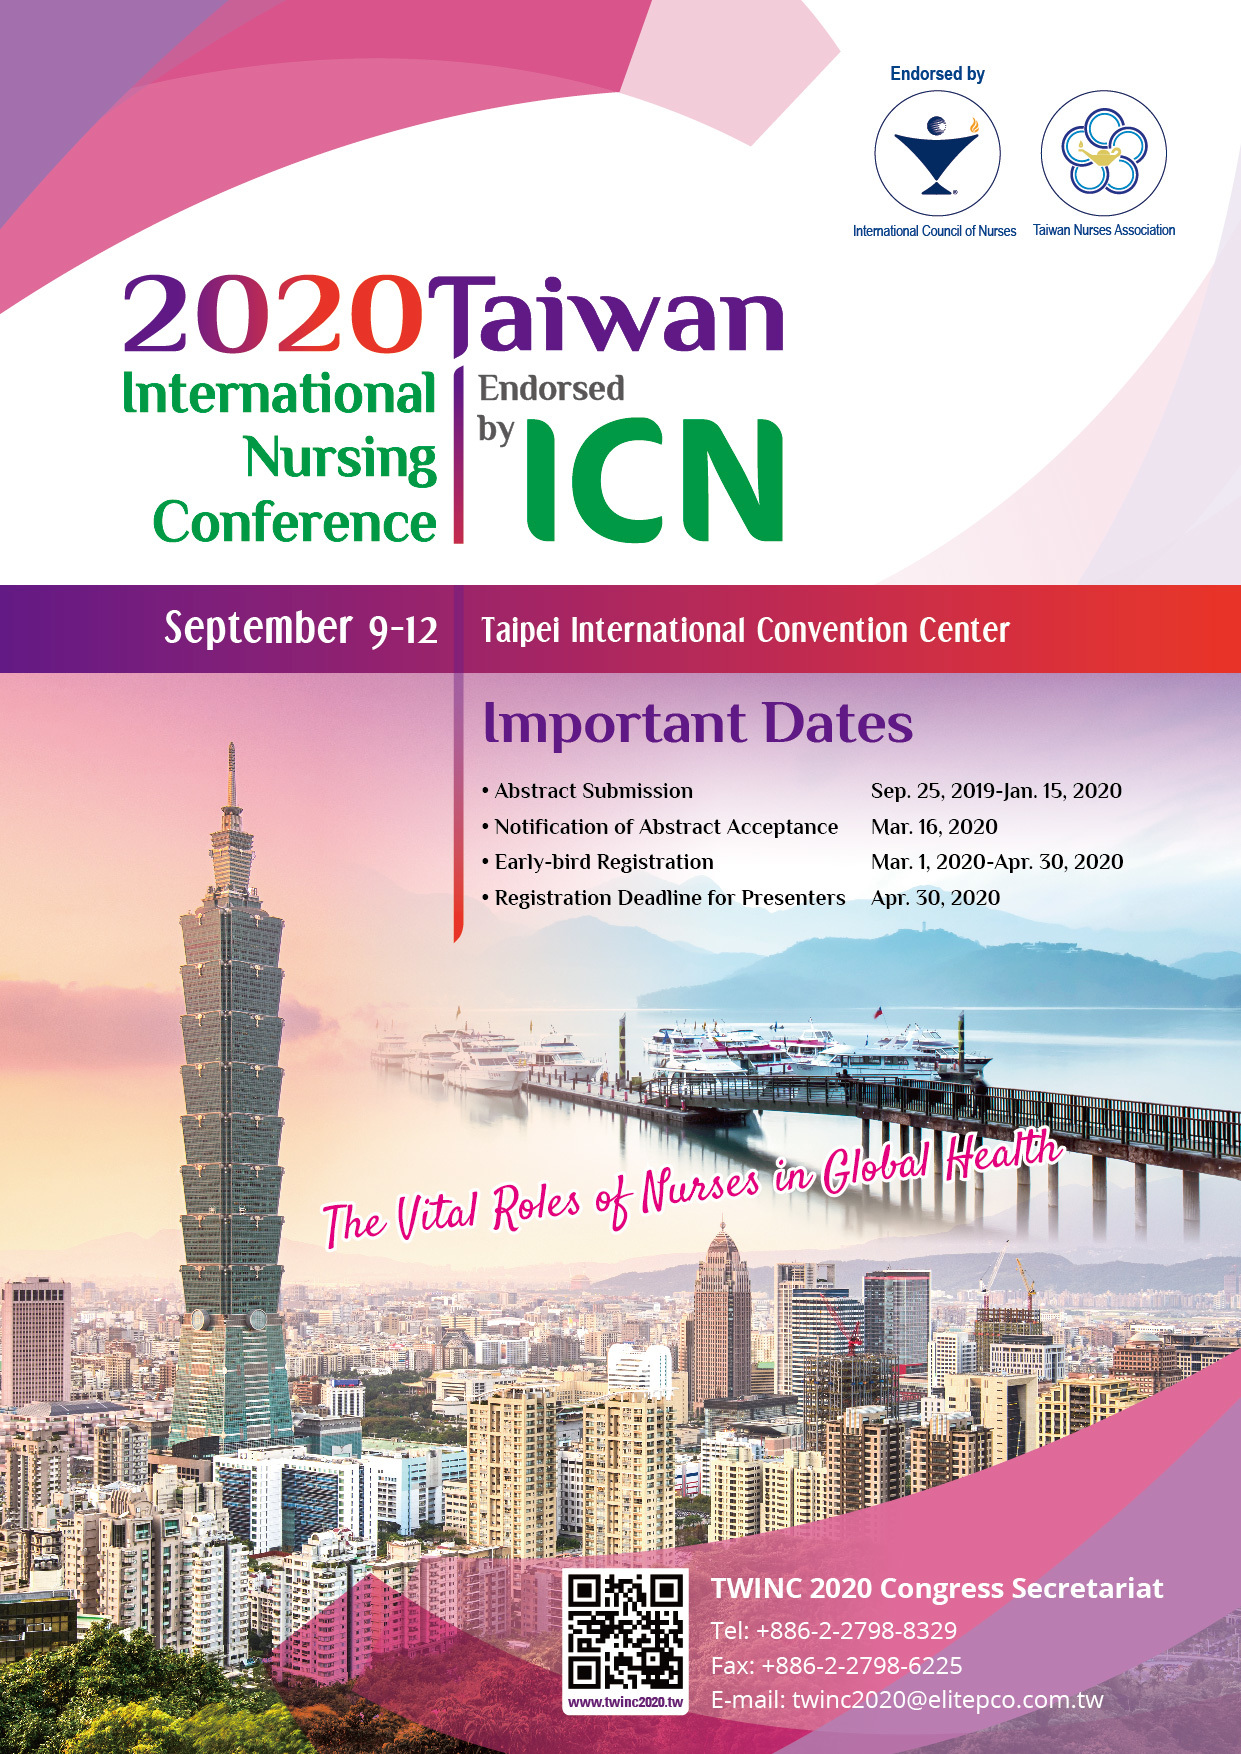 2020年9月9-12日『2020 臺灣國際護理研討會』(護理師在全球健康的關鍵角色)